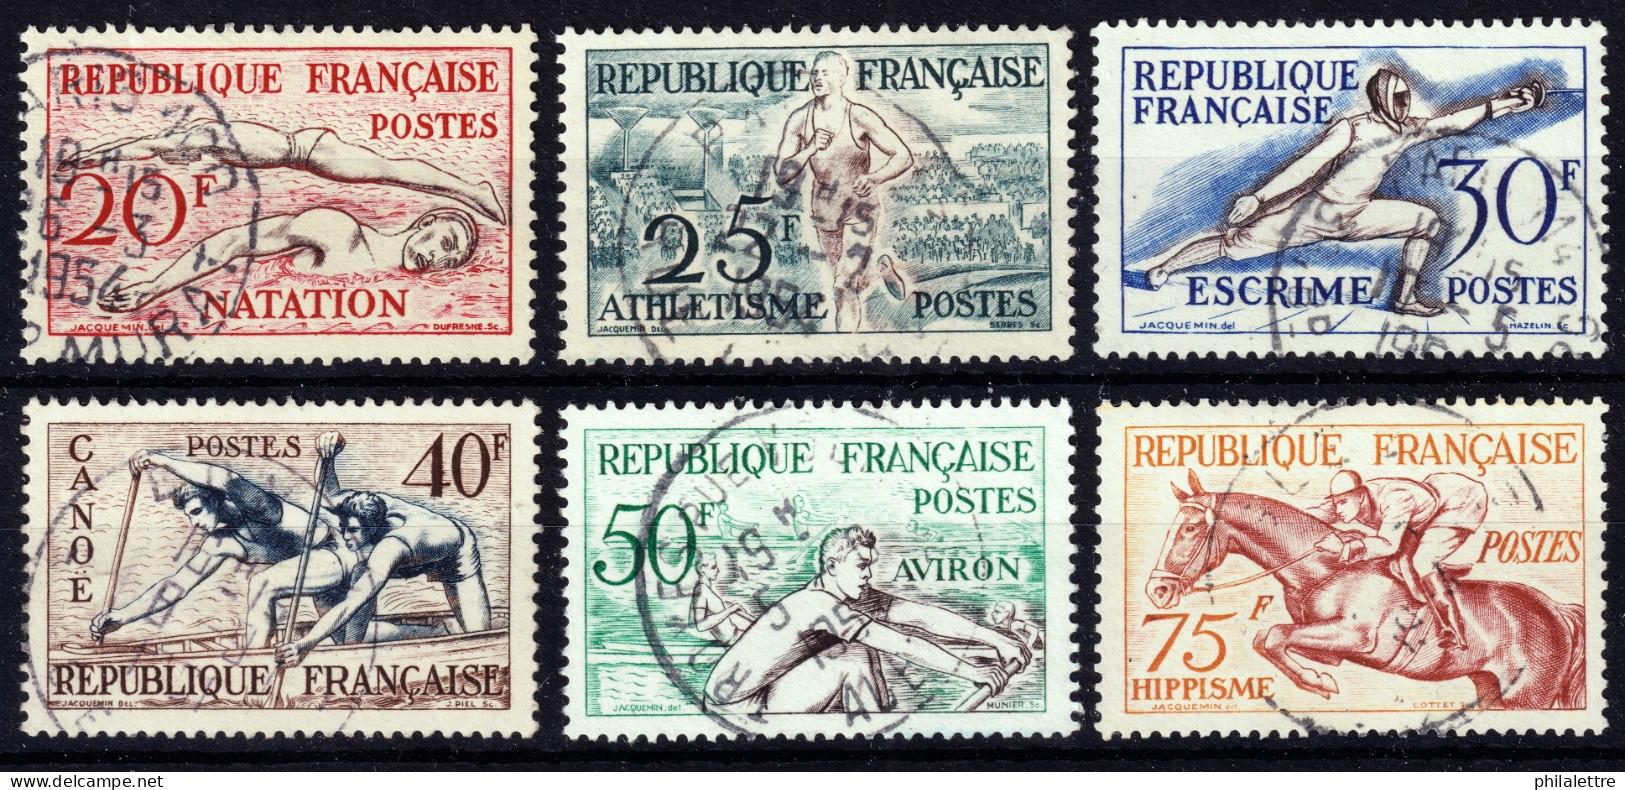 FRANCE - 1953 Yv.960/5 Jeux Olympiques D'Helsinki - Oblitérés TB - Usados